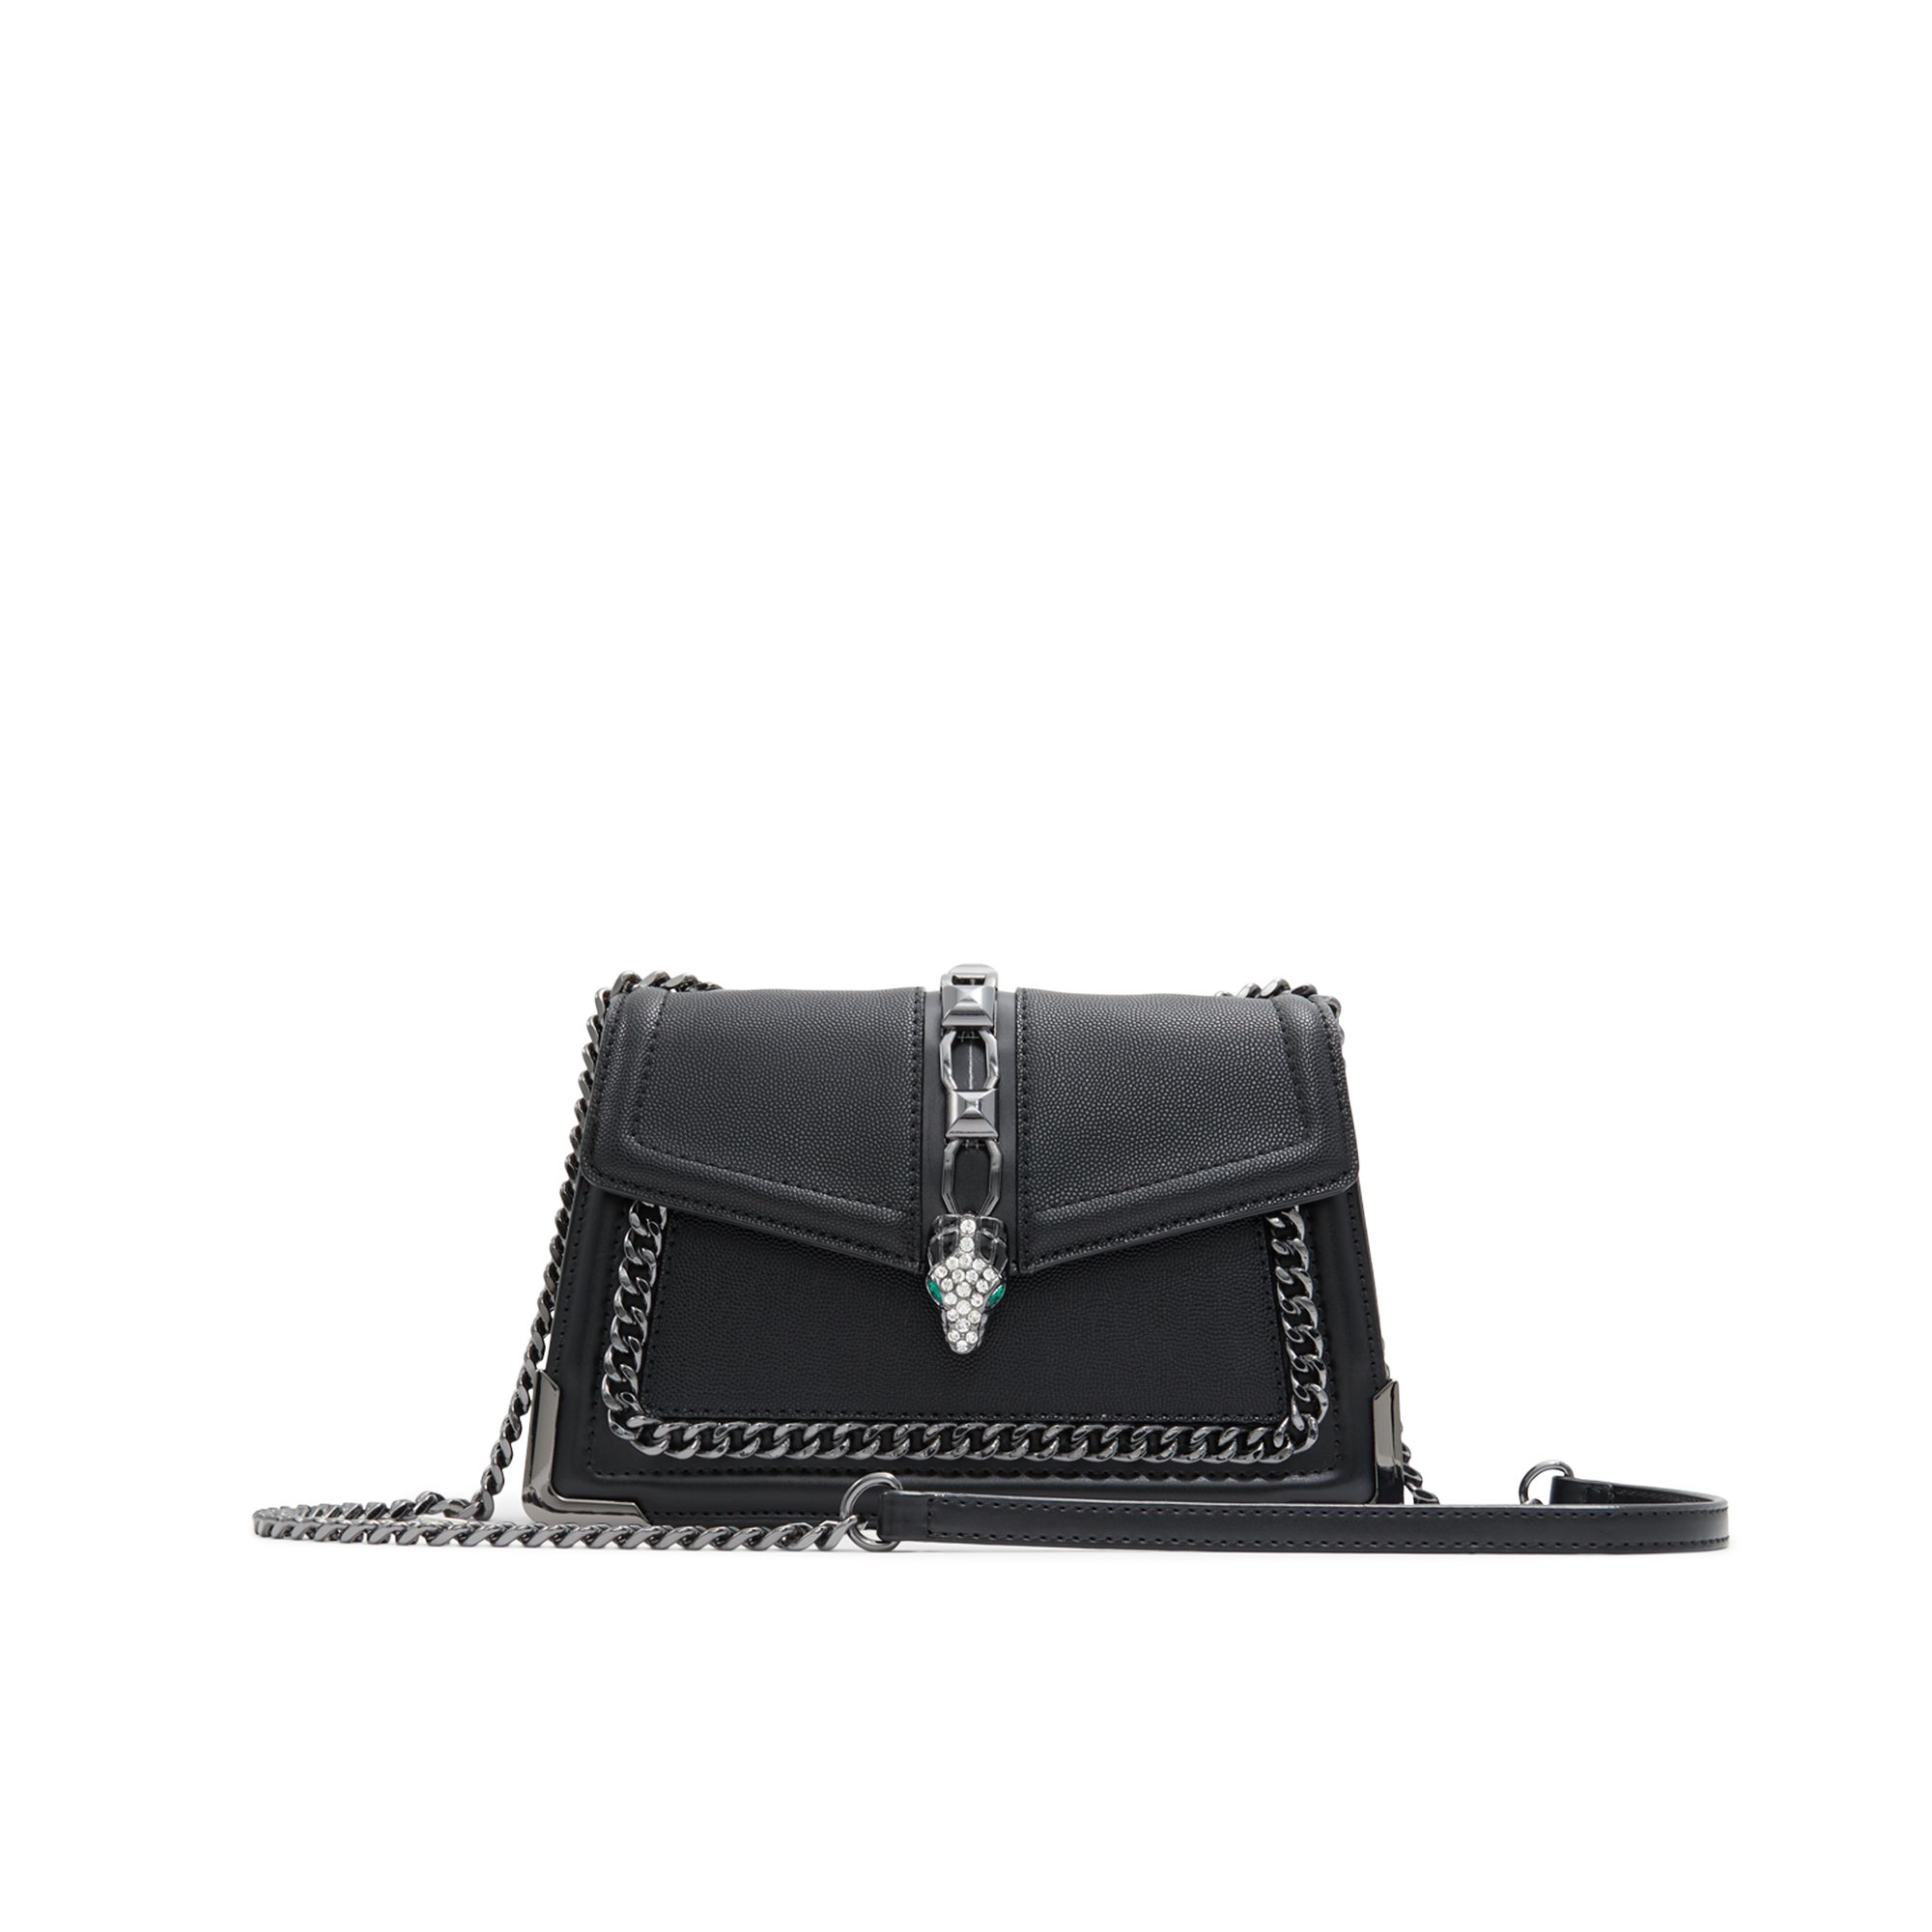 ALDO Adanantar - Women's Handbags Crossbody - Black